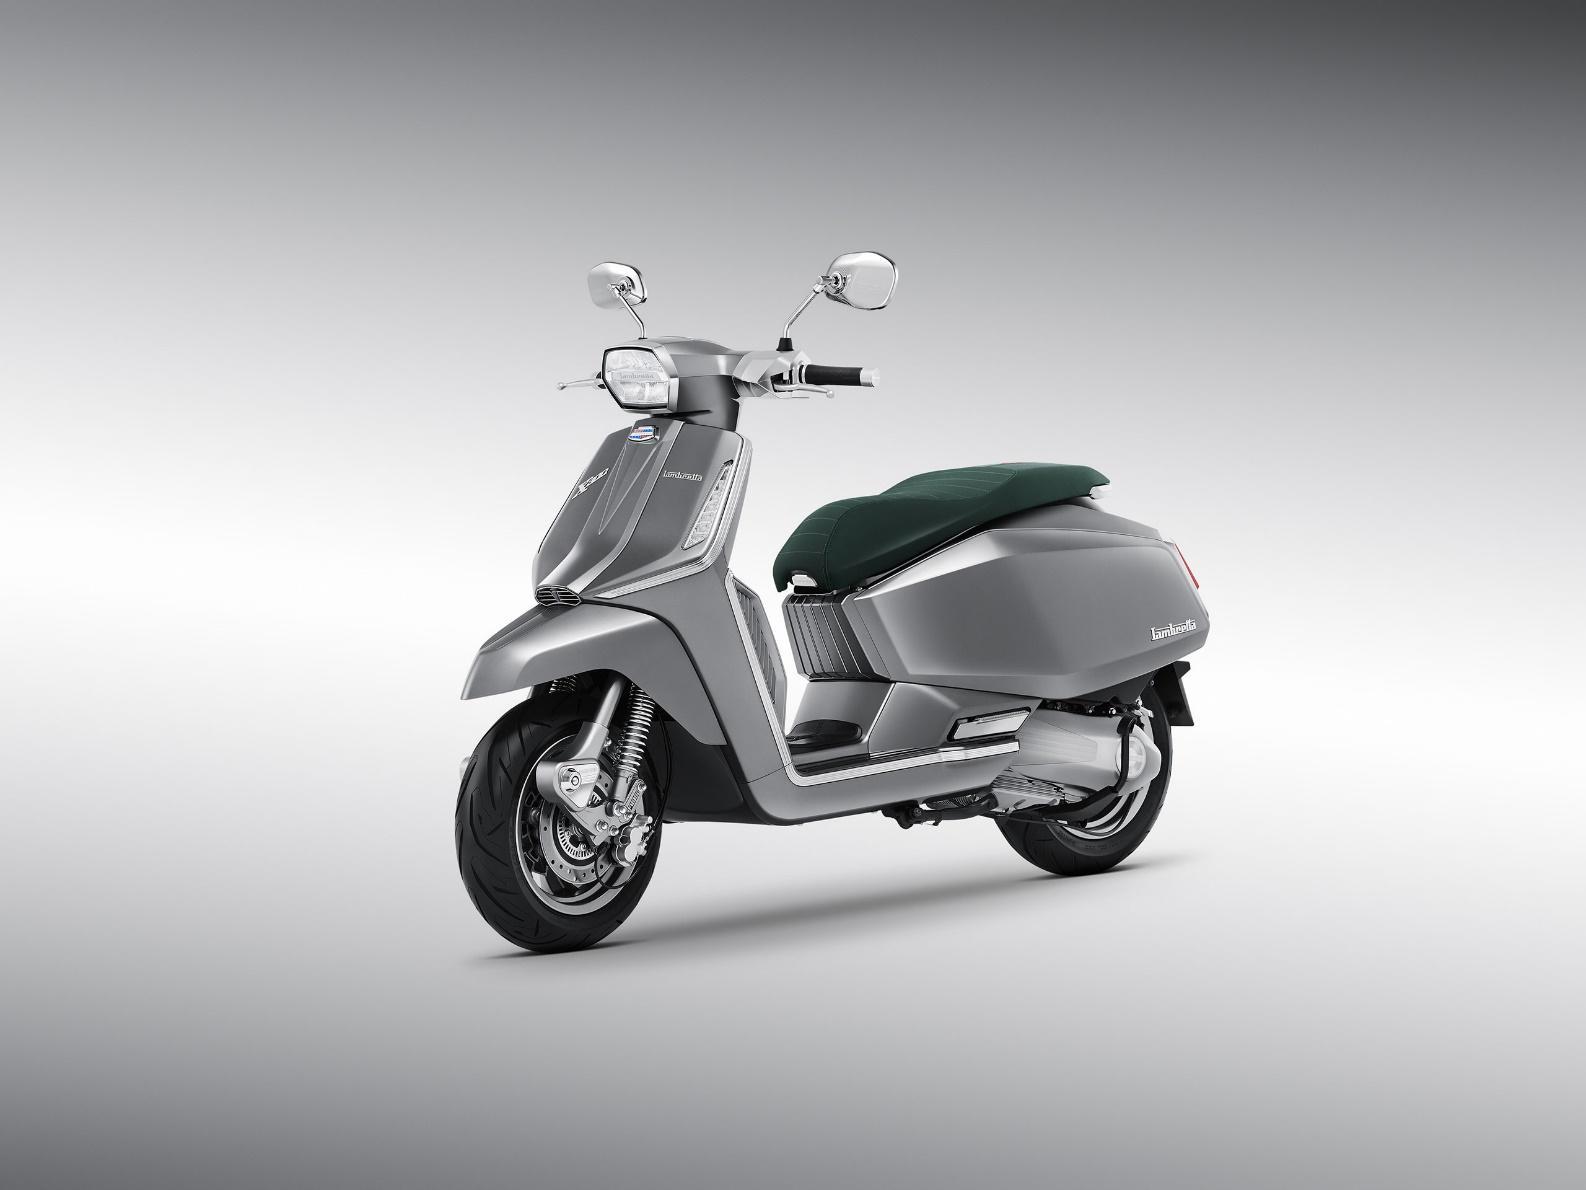 Uno scooter argentato con un sedile verde
Descrizione generata automaticamente